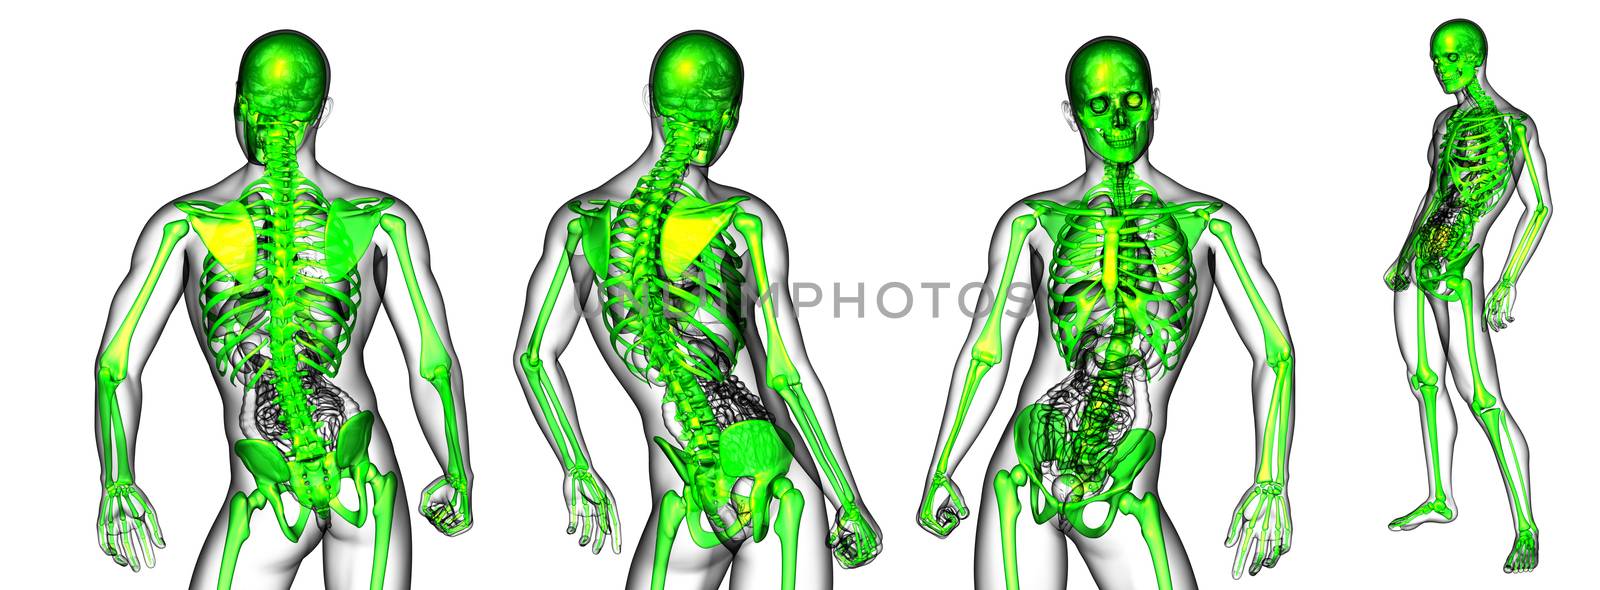 3d rendering medical illustration of the skeleton 